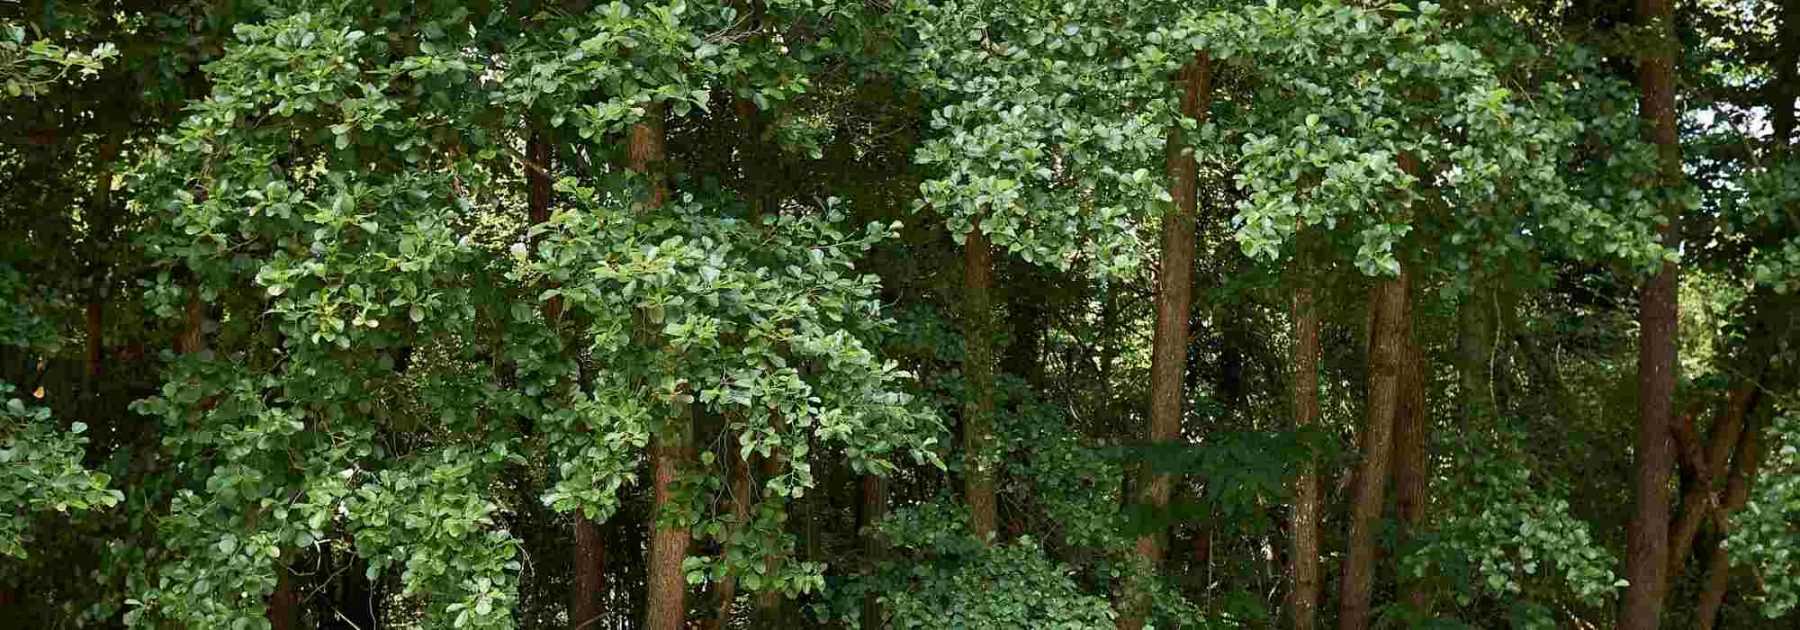 Jusqu'à quel âge vivent les arbres ? : Questions du mois